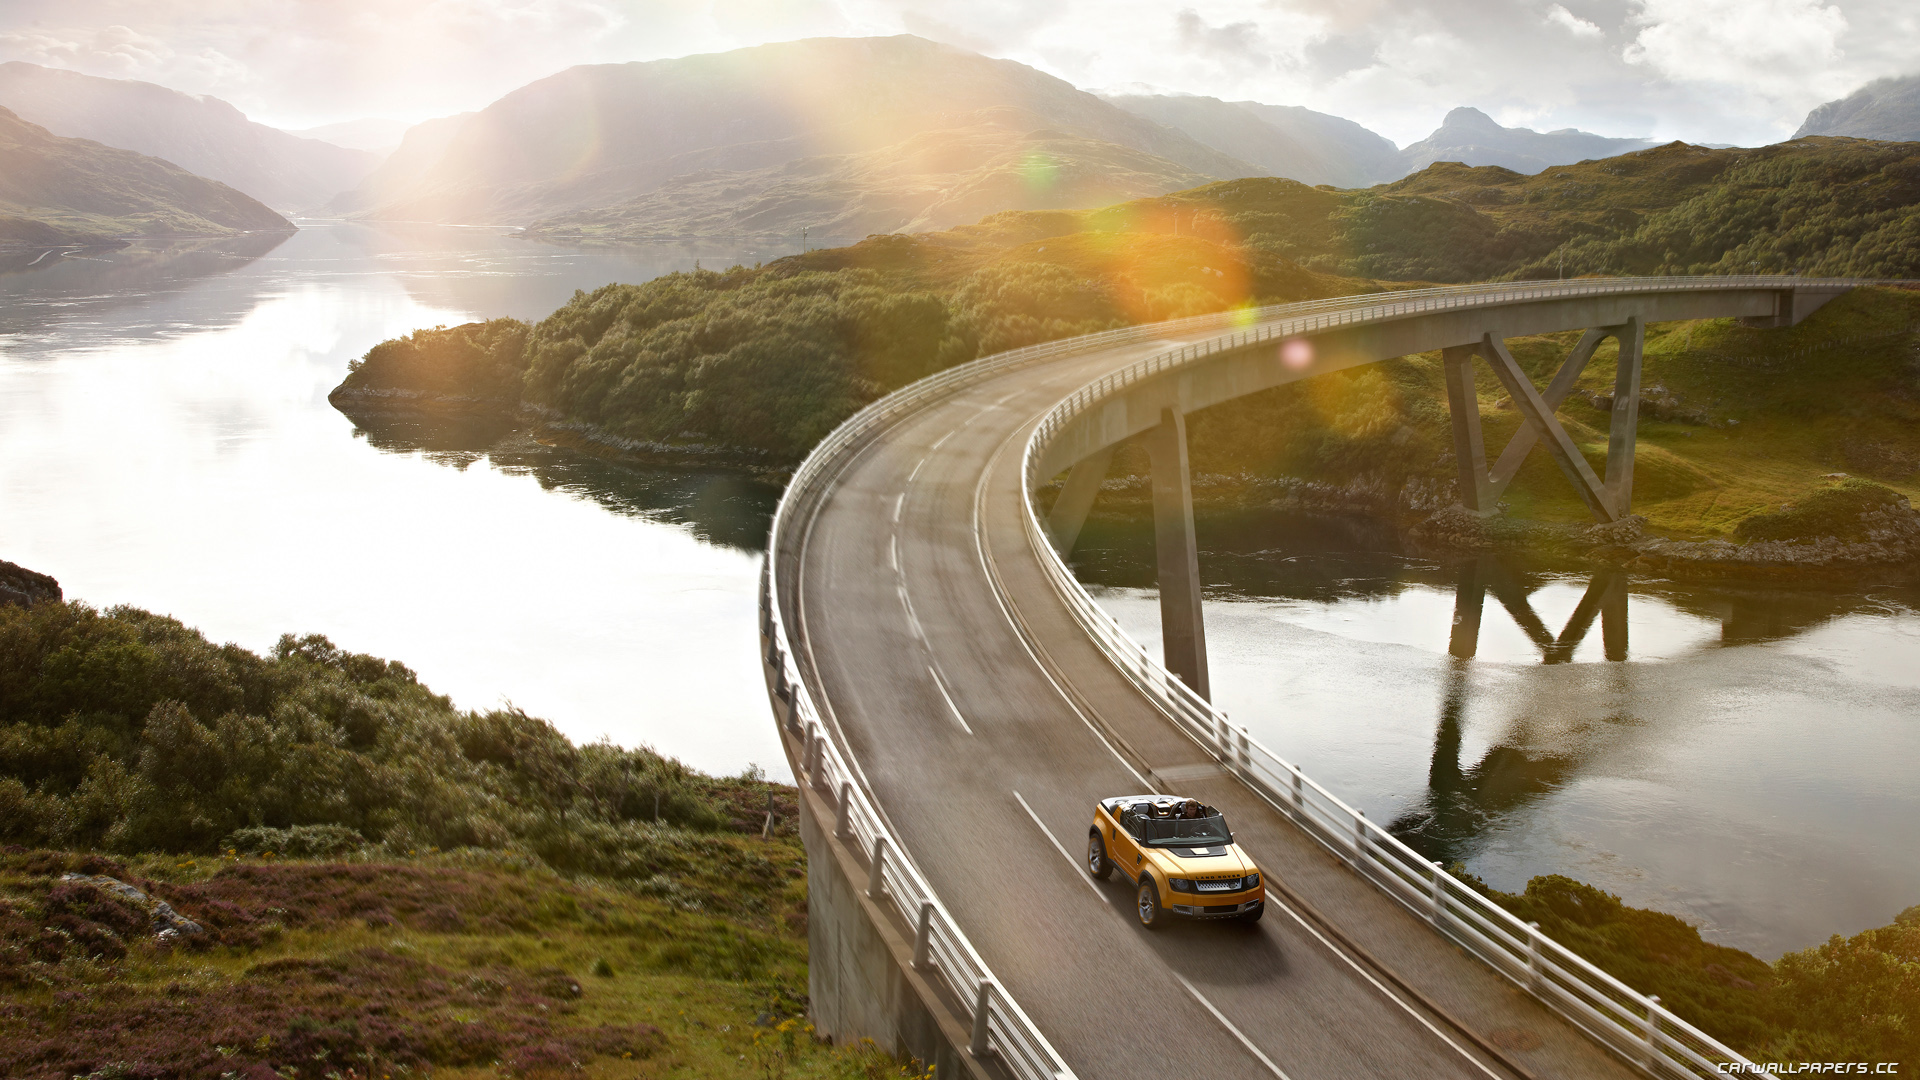 Скачать обои 2011 Land Rover Dc100 Sport Concept на телефон бесплатно